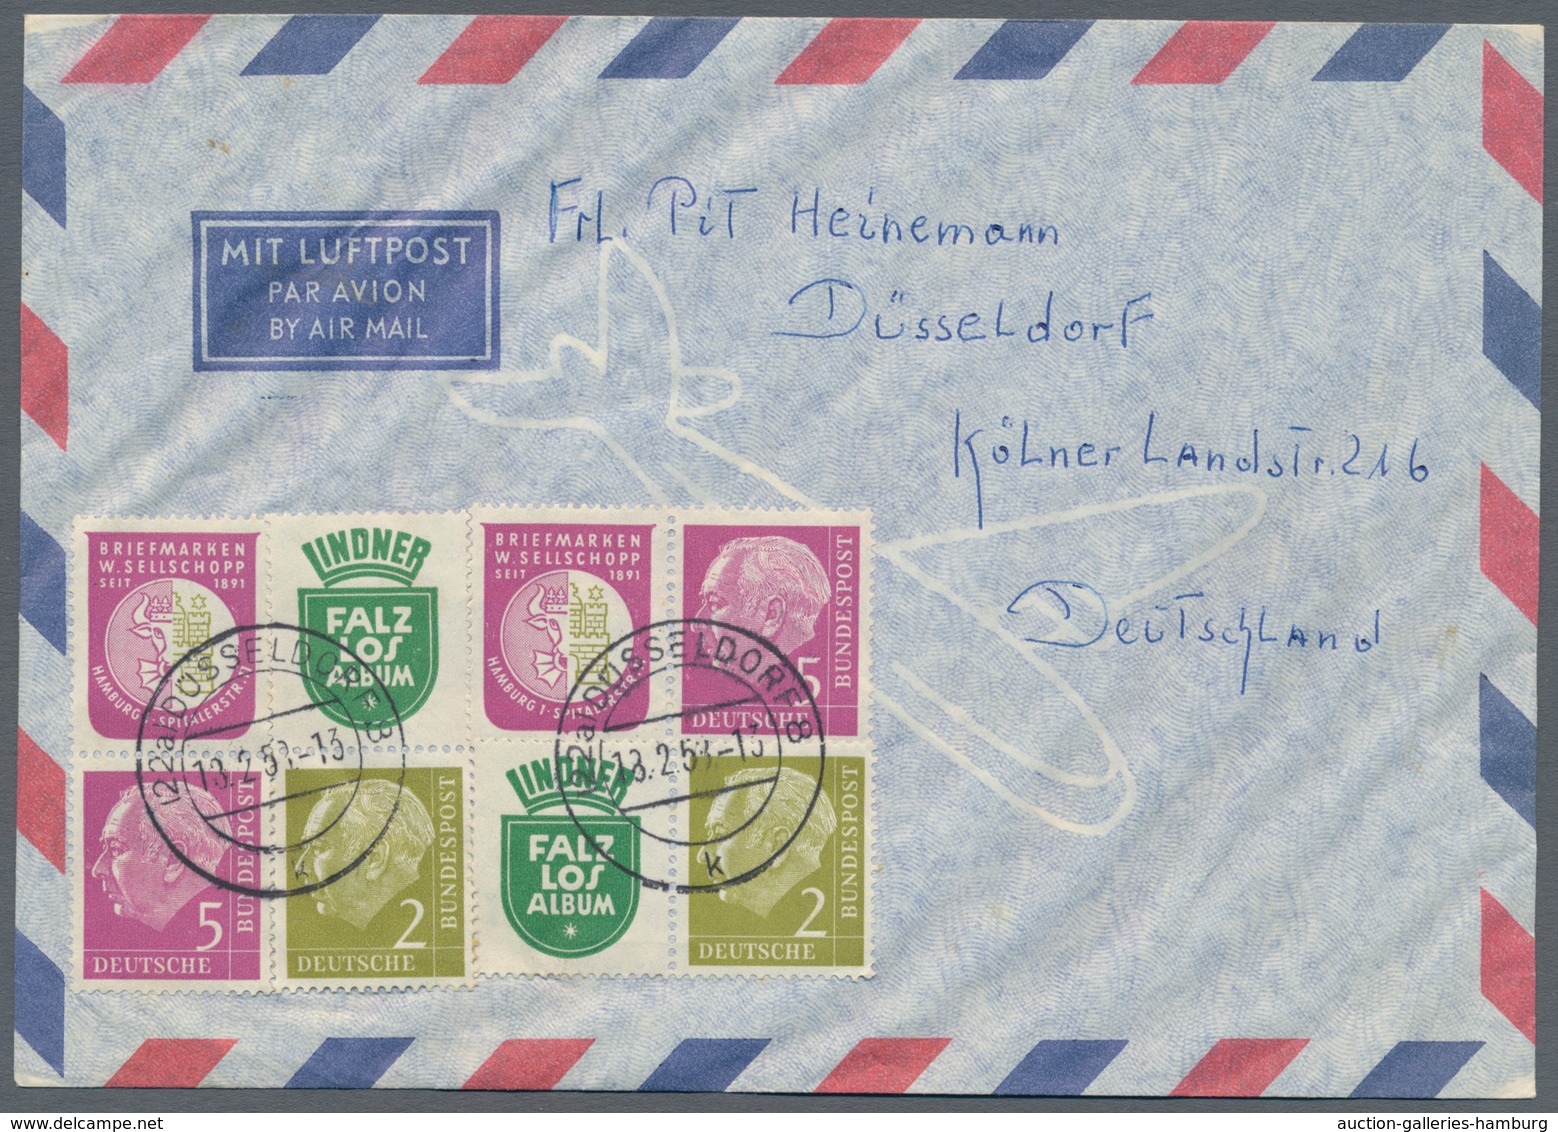 Bundesrepublik - Zusammendrucke: 1956, Heuss 1956 über weite Strecken komlett auf 20 portorichtigen